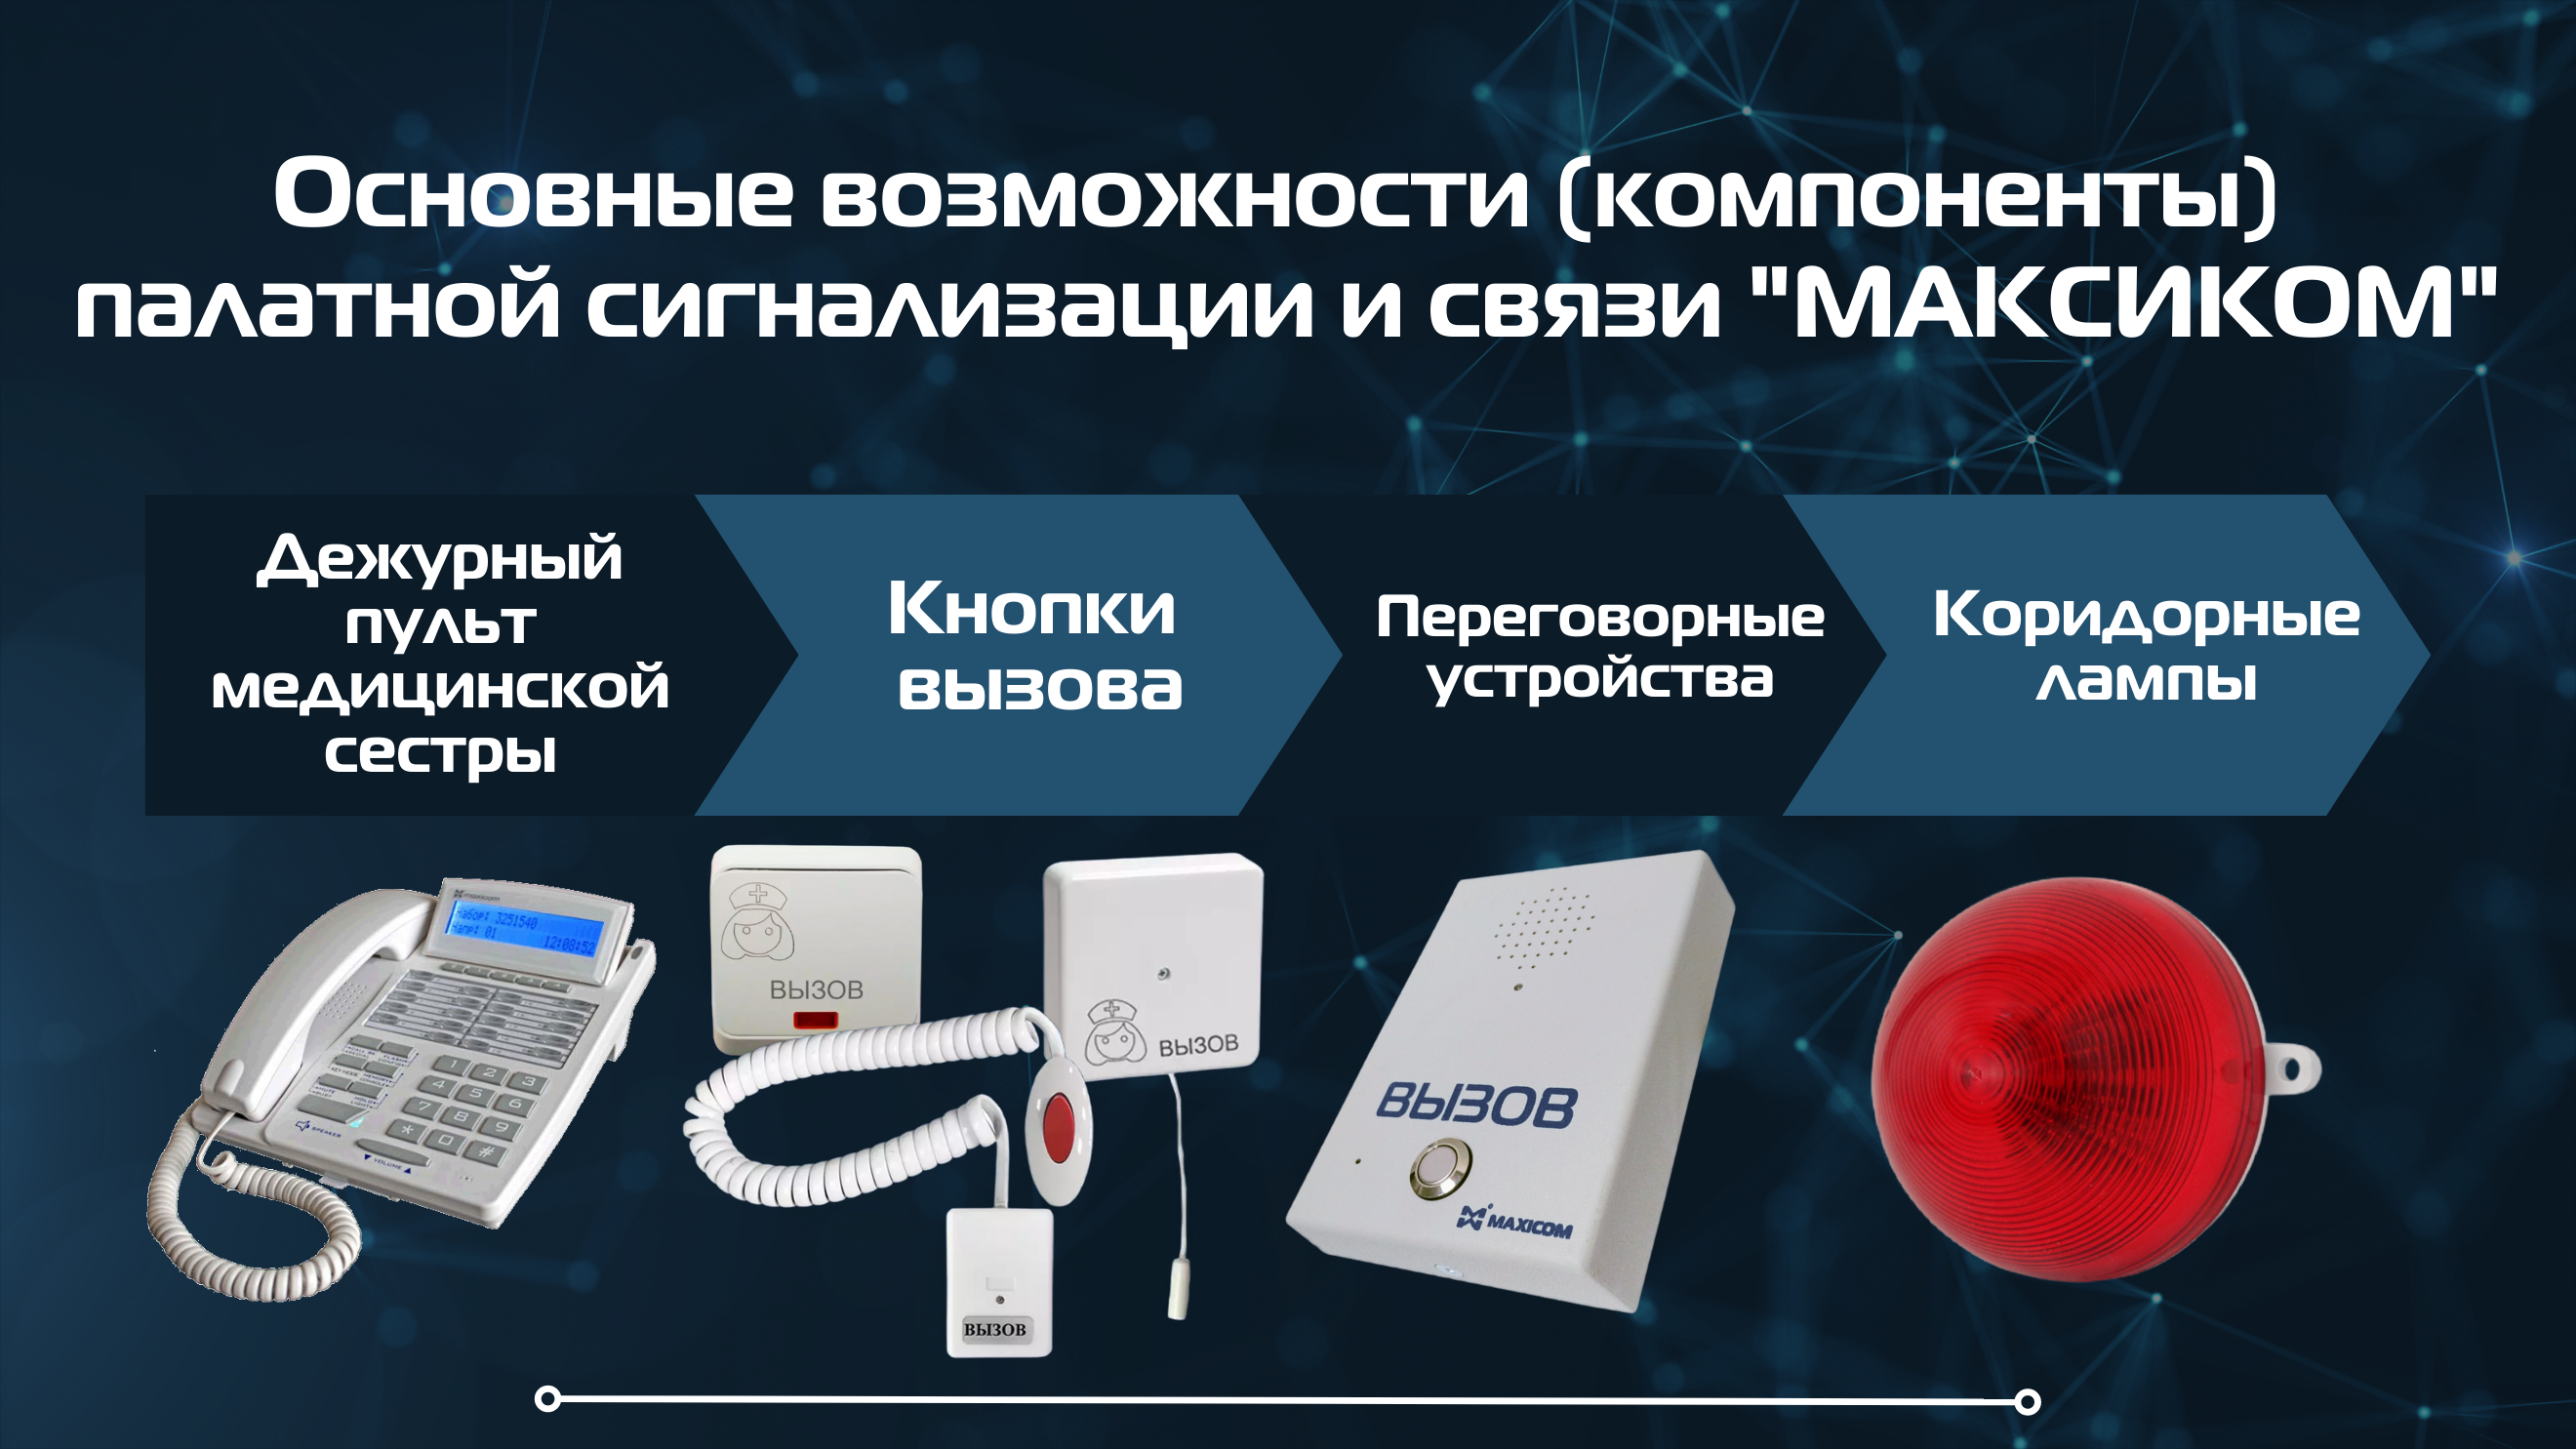 Палатная сигнализация и связь "Максиком" обеспечивает следующие возможности для Российских учреждений здравоохранения